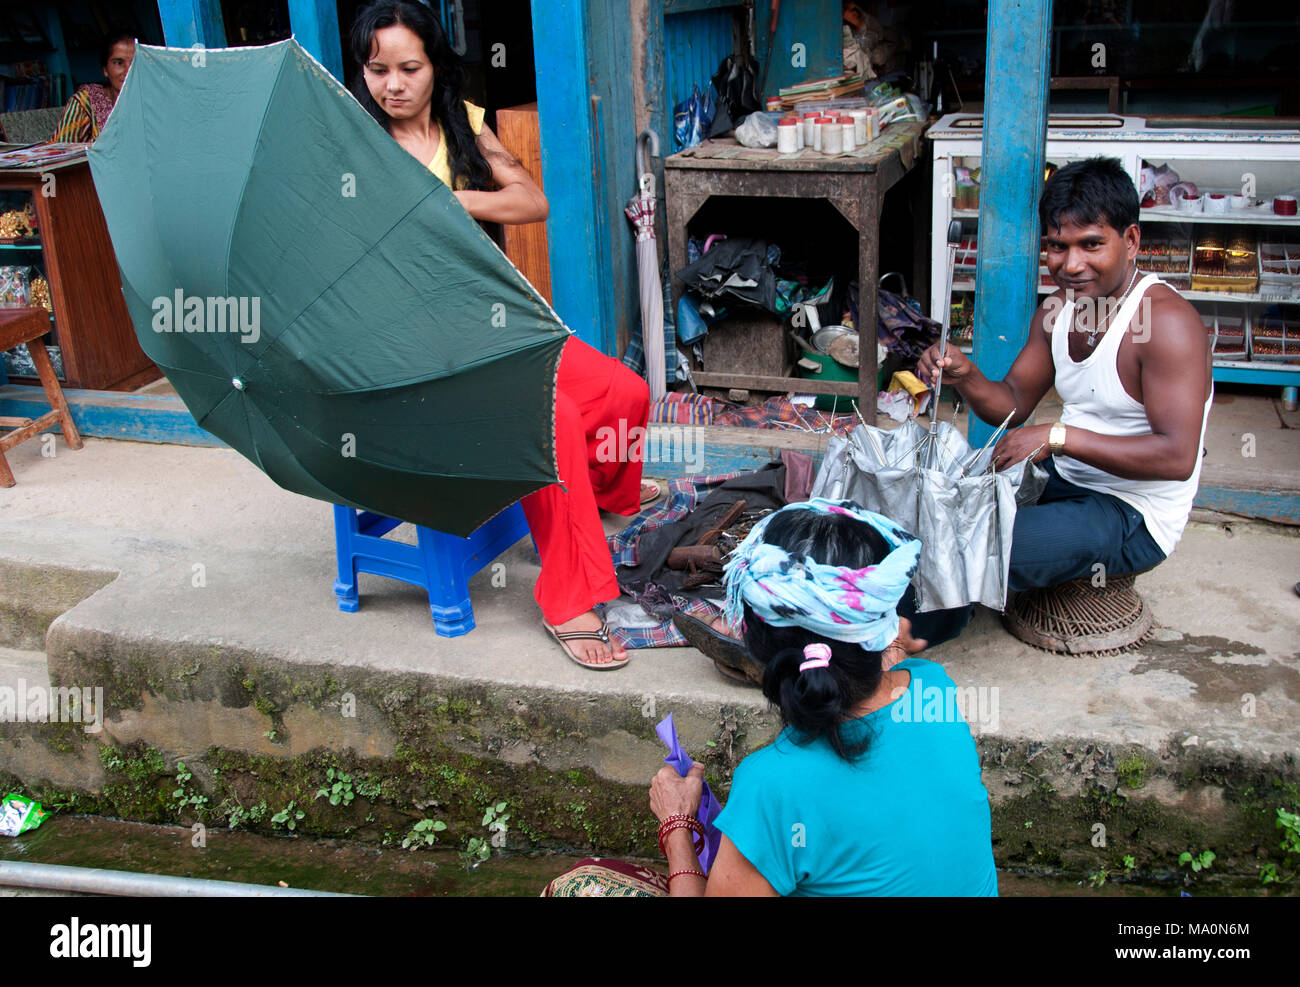 Népal 2014. Khandbari. Umbrella mender travaille sur son terrain de la chaussée en face d'une boutique, avec des clients en attente. Banque D'Images